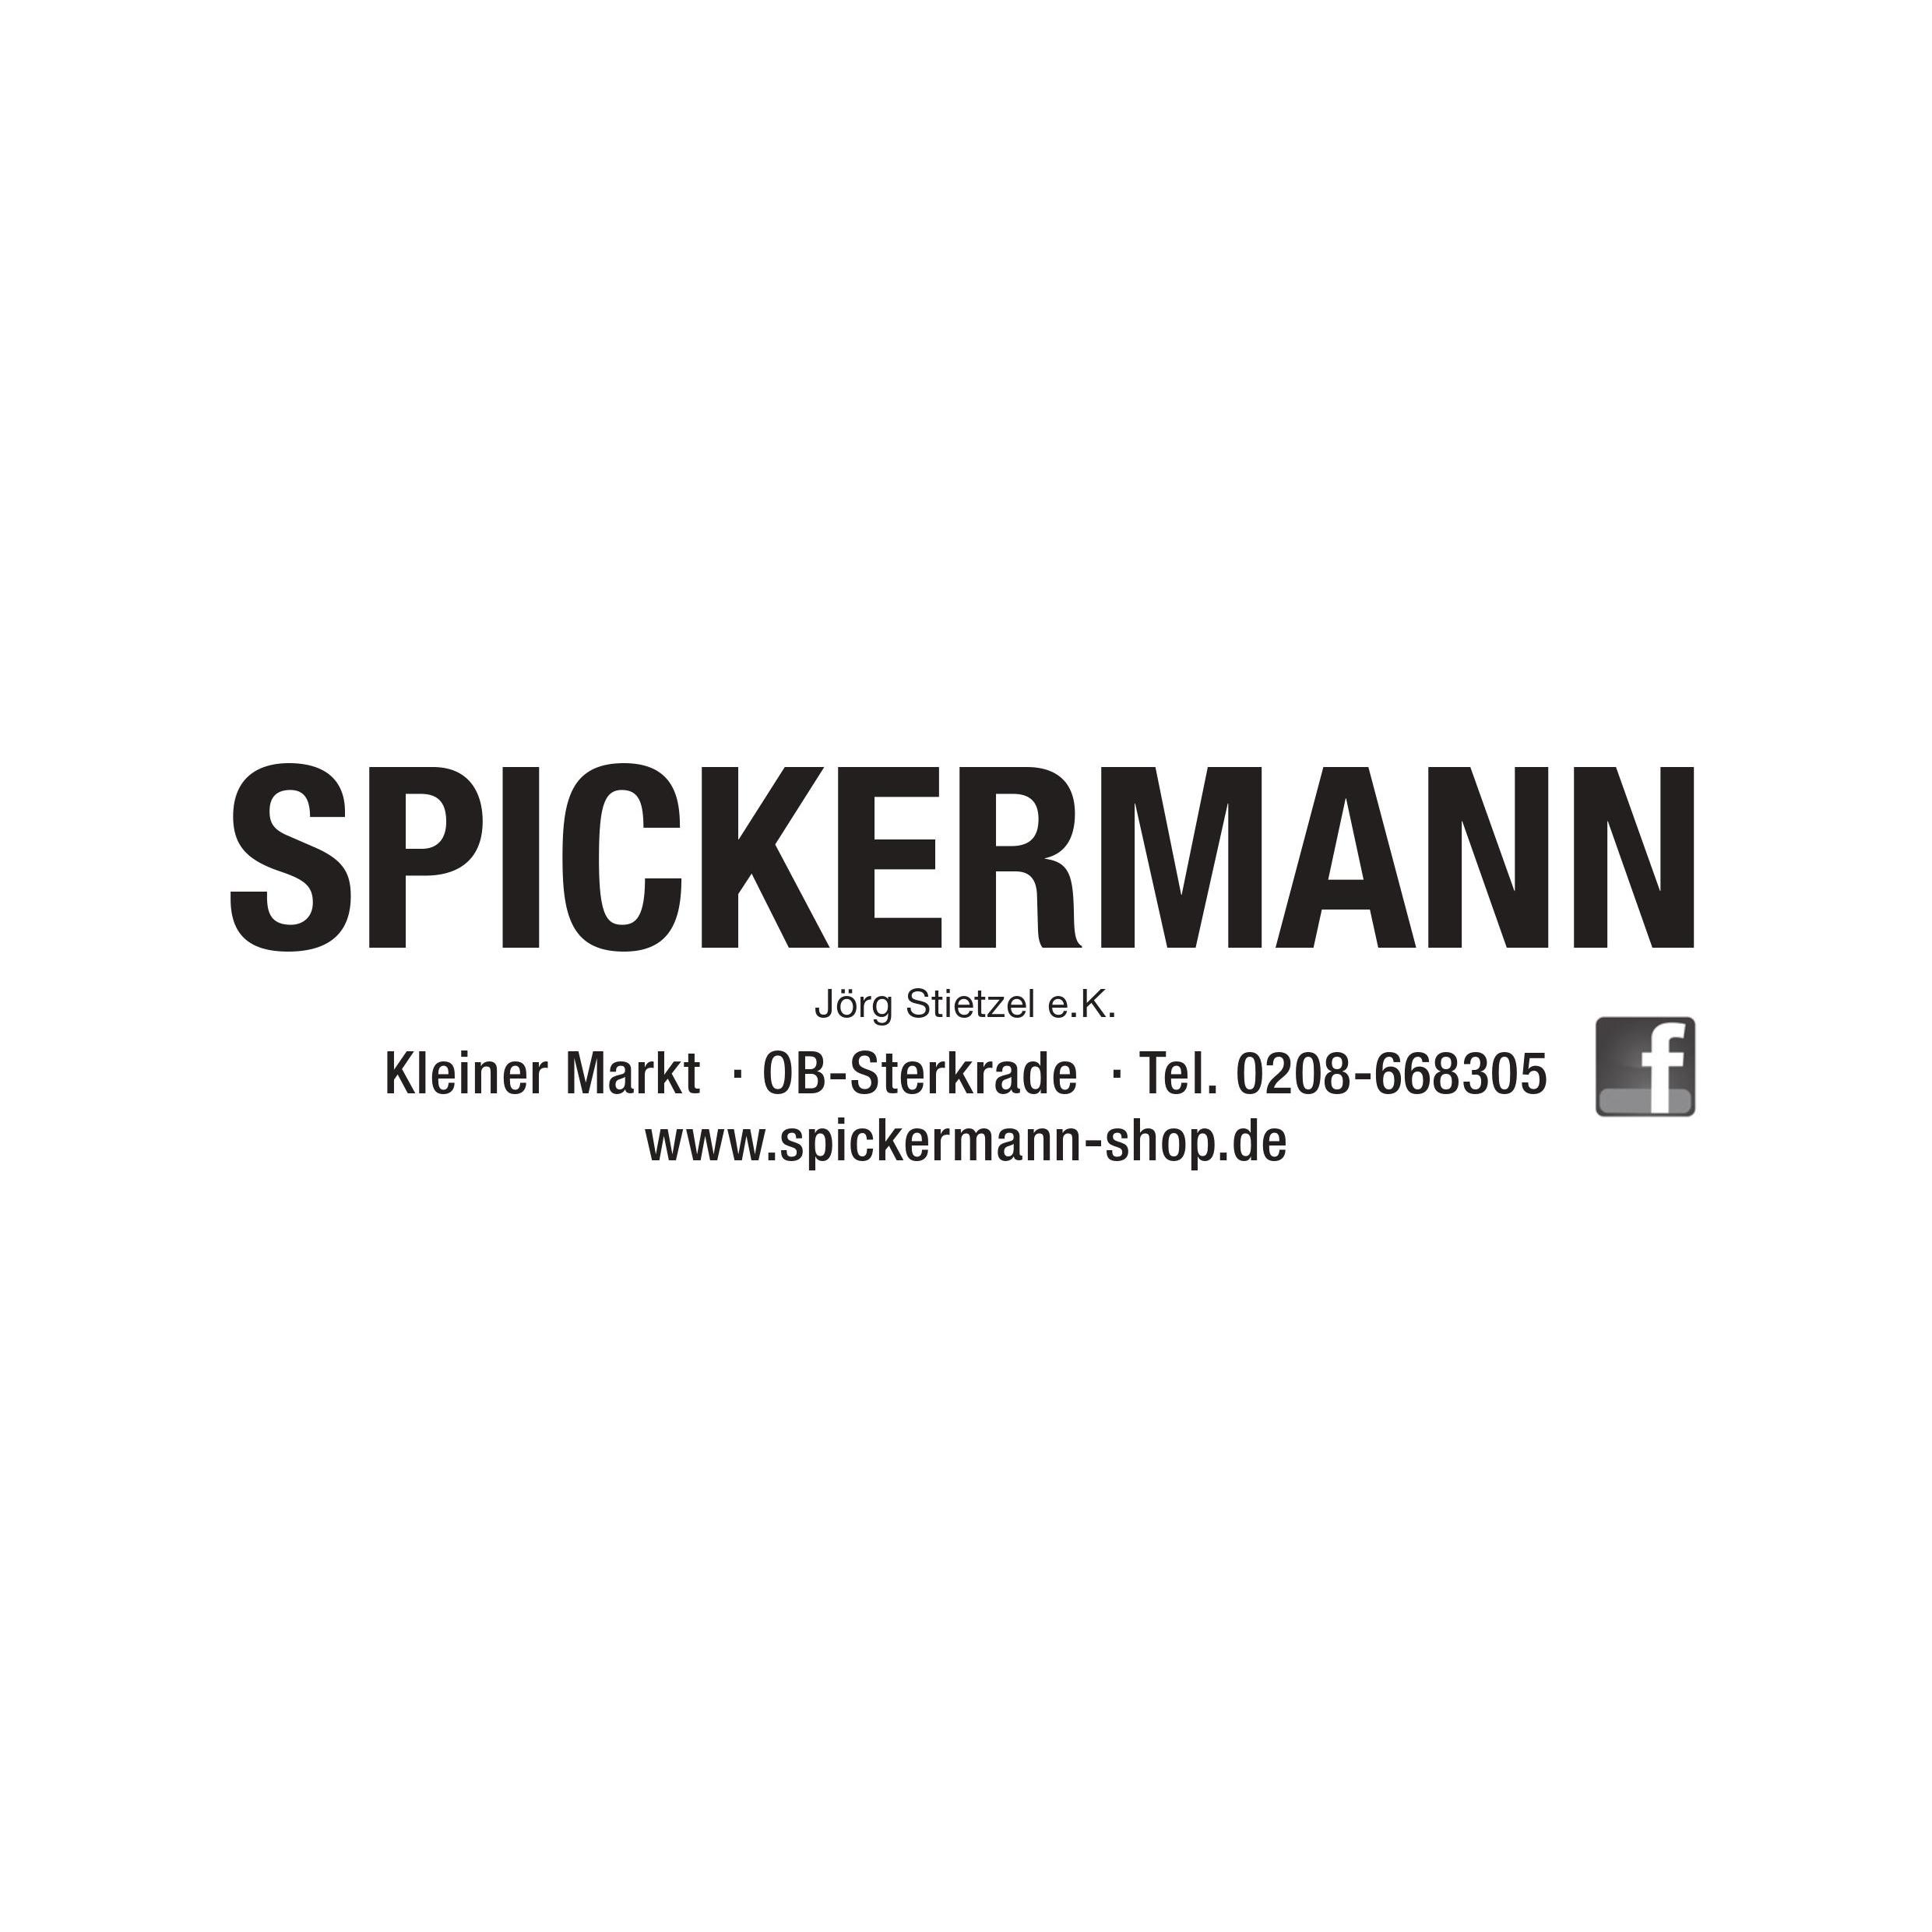 Spickermann Inh. Jörg Stietzel e.K. in Oberhausen-Sterkrade